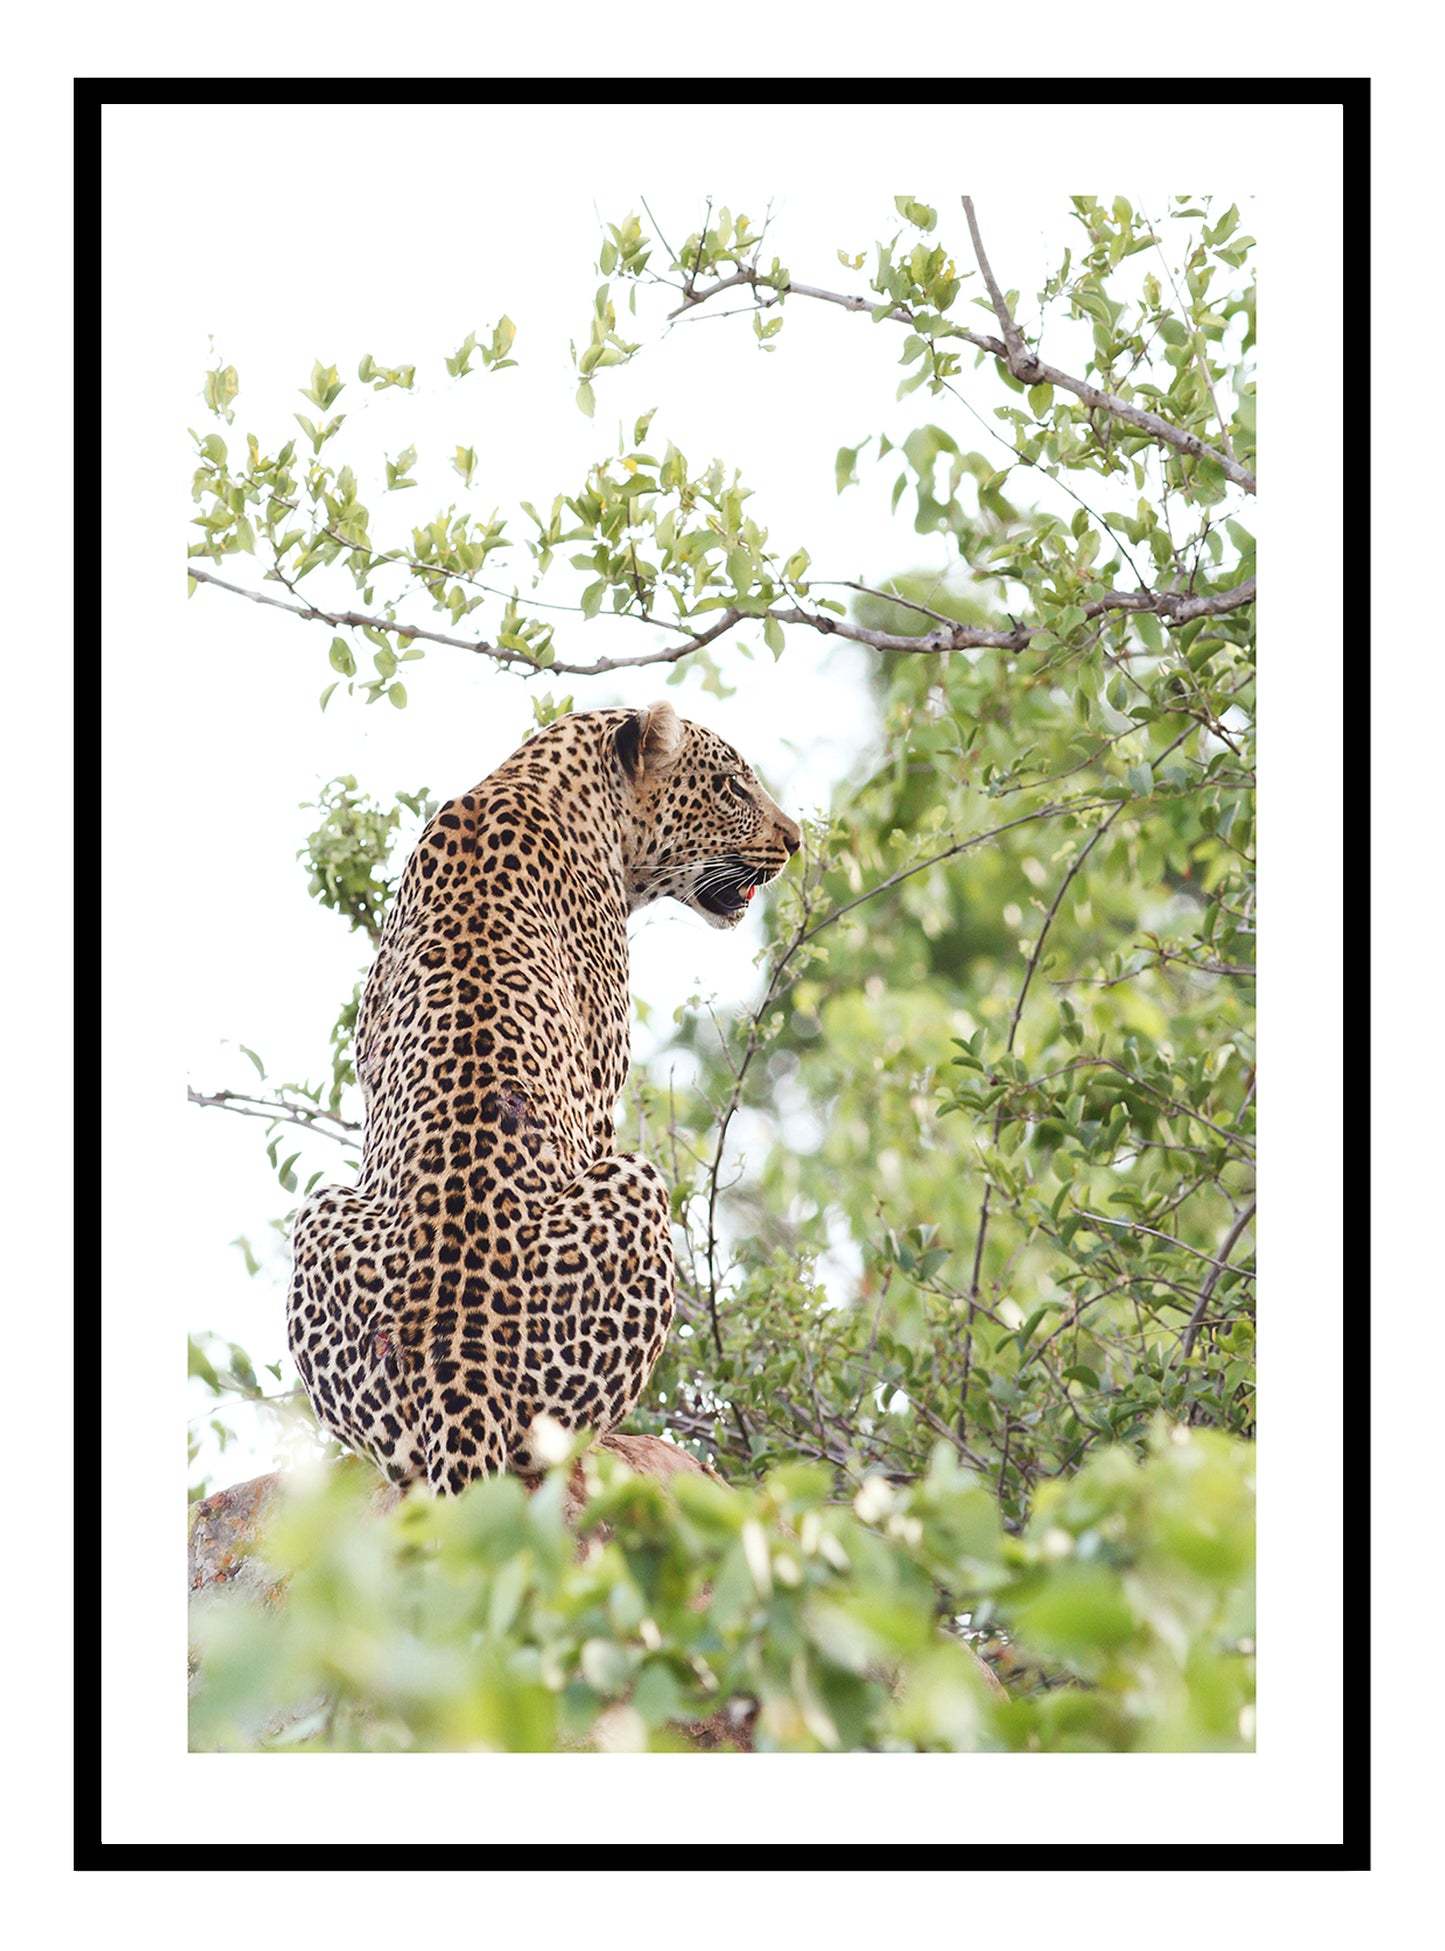 Leopard am Wild Art Print